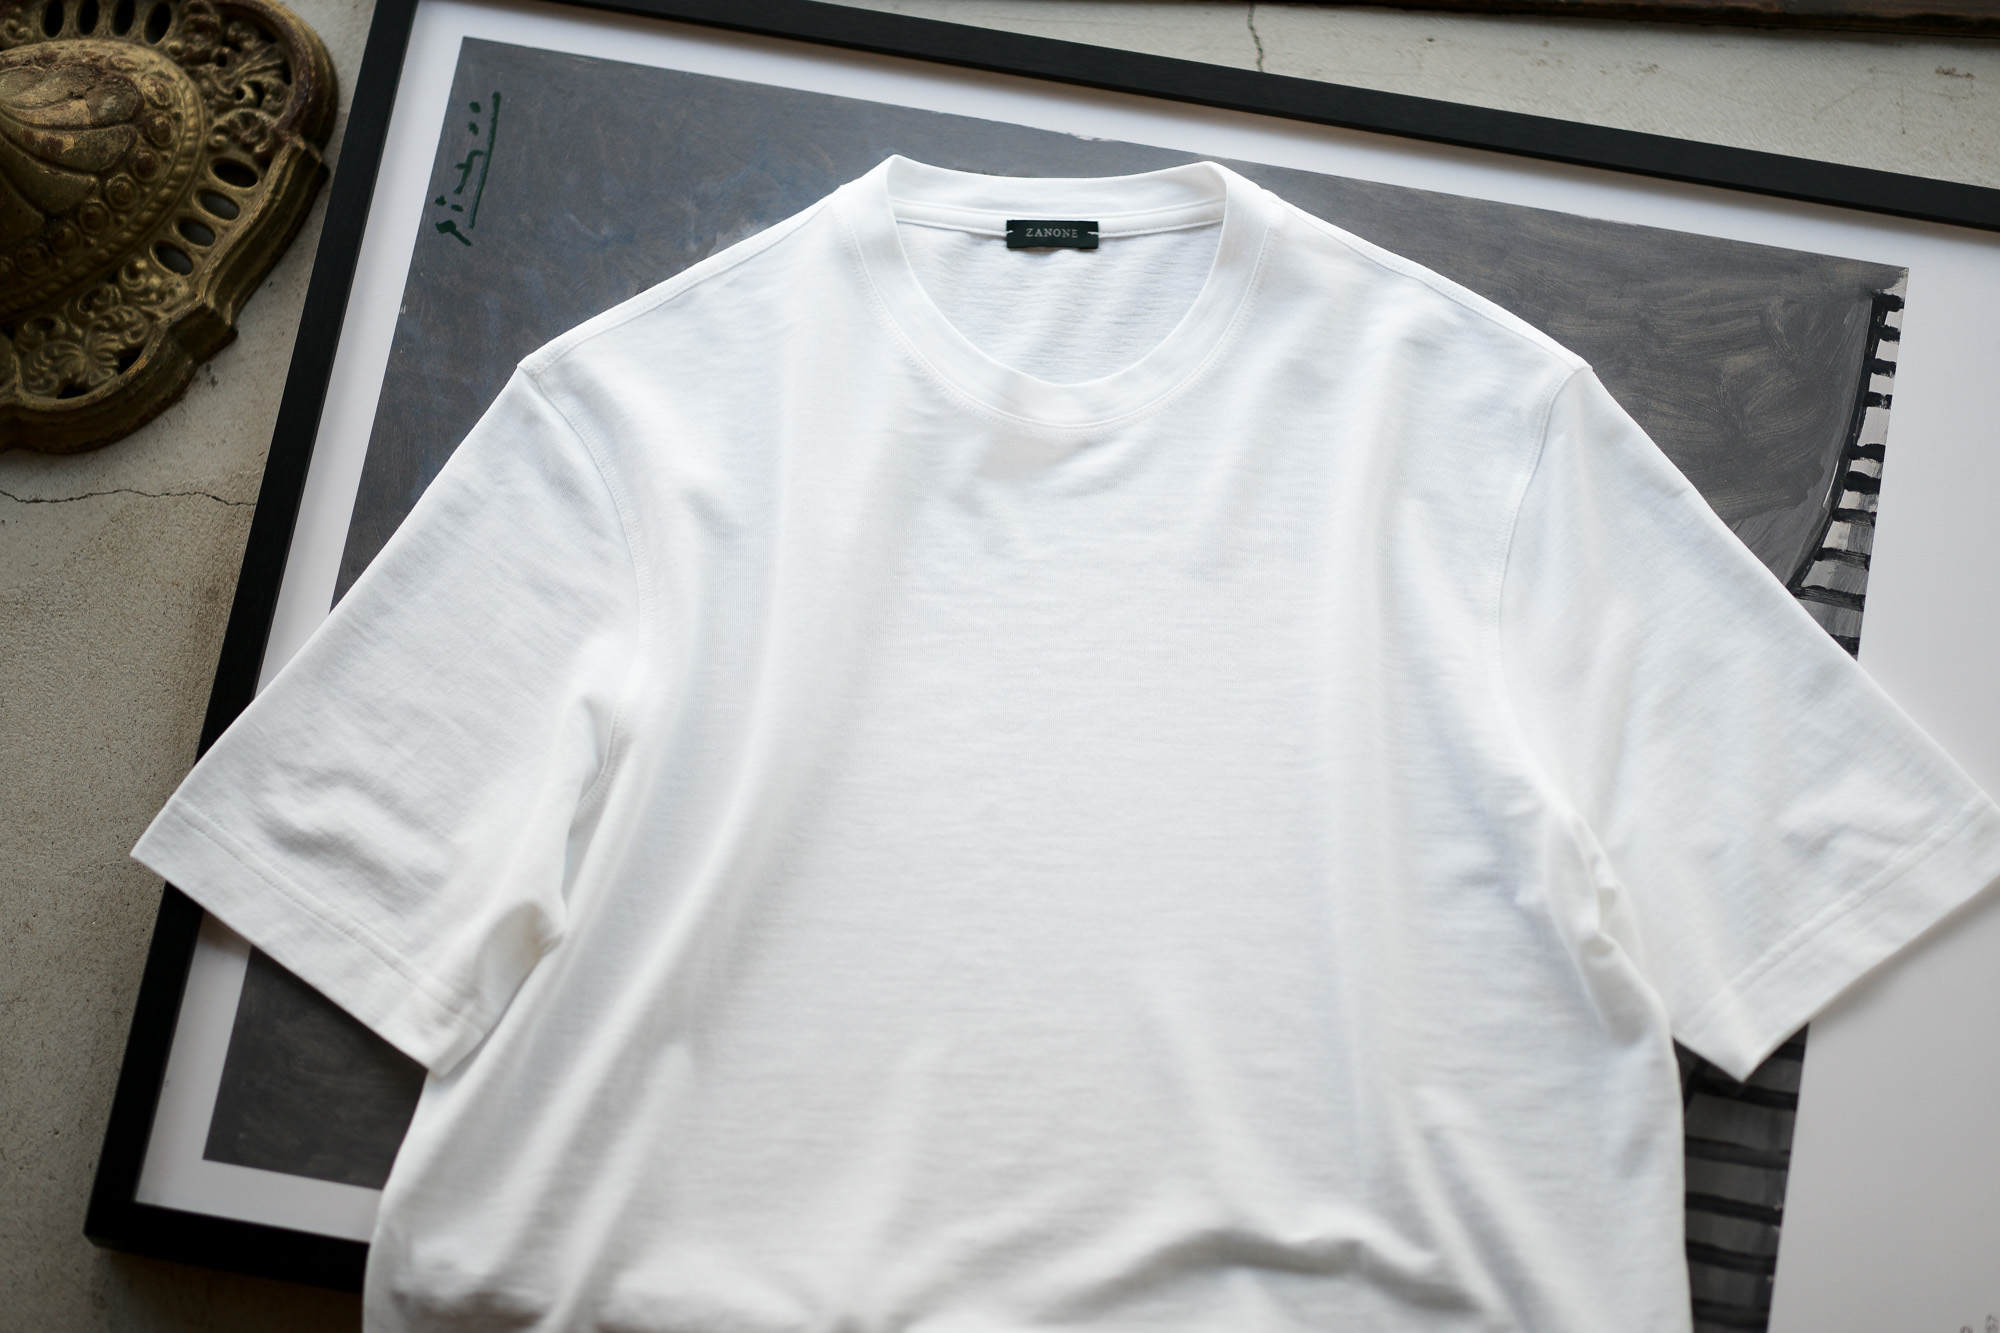 ZANONE(ザノーネ) Crew Neck T-shirt (クルーネックTシャツ) ice cotton アイスコットン Tシャツ WHITE (ホワイト・Z0001) MADE IN ITALY(イタリア製) 2020 春夏新作 愛知 名古屋 altoediritto アルトエデリット tee 夏Tシャツ